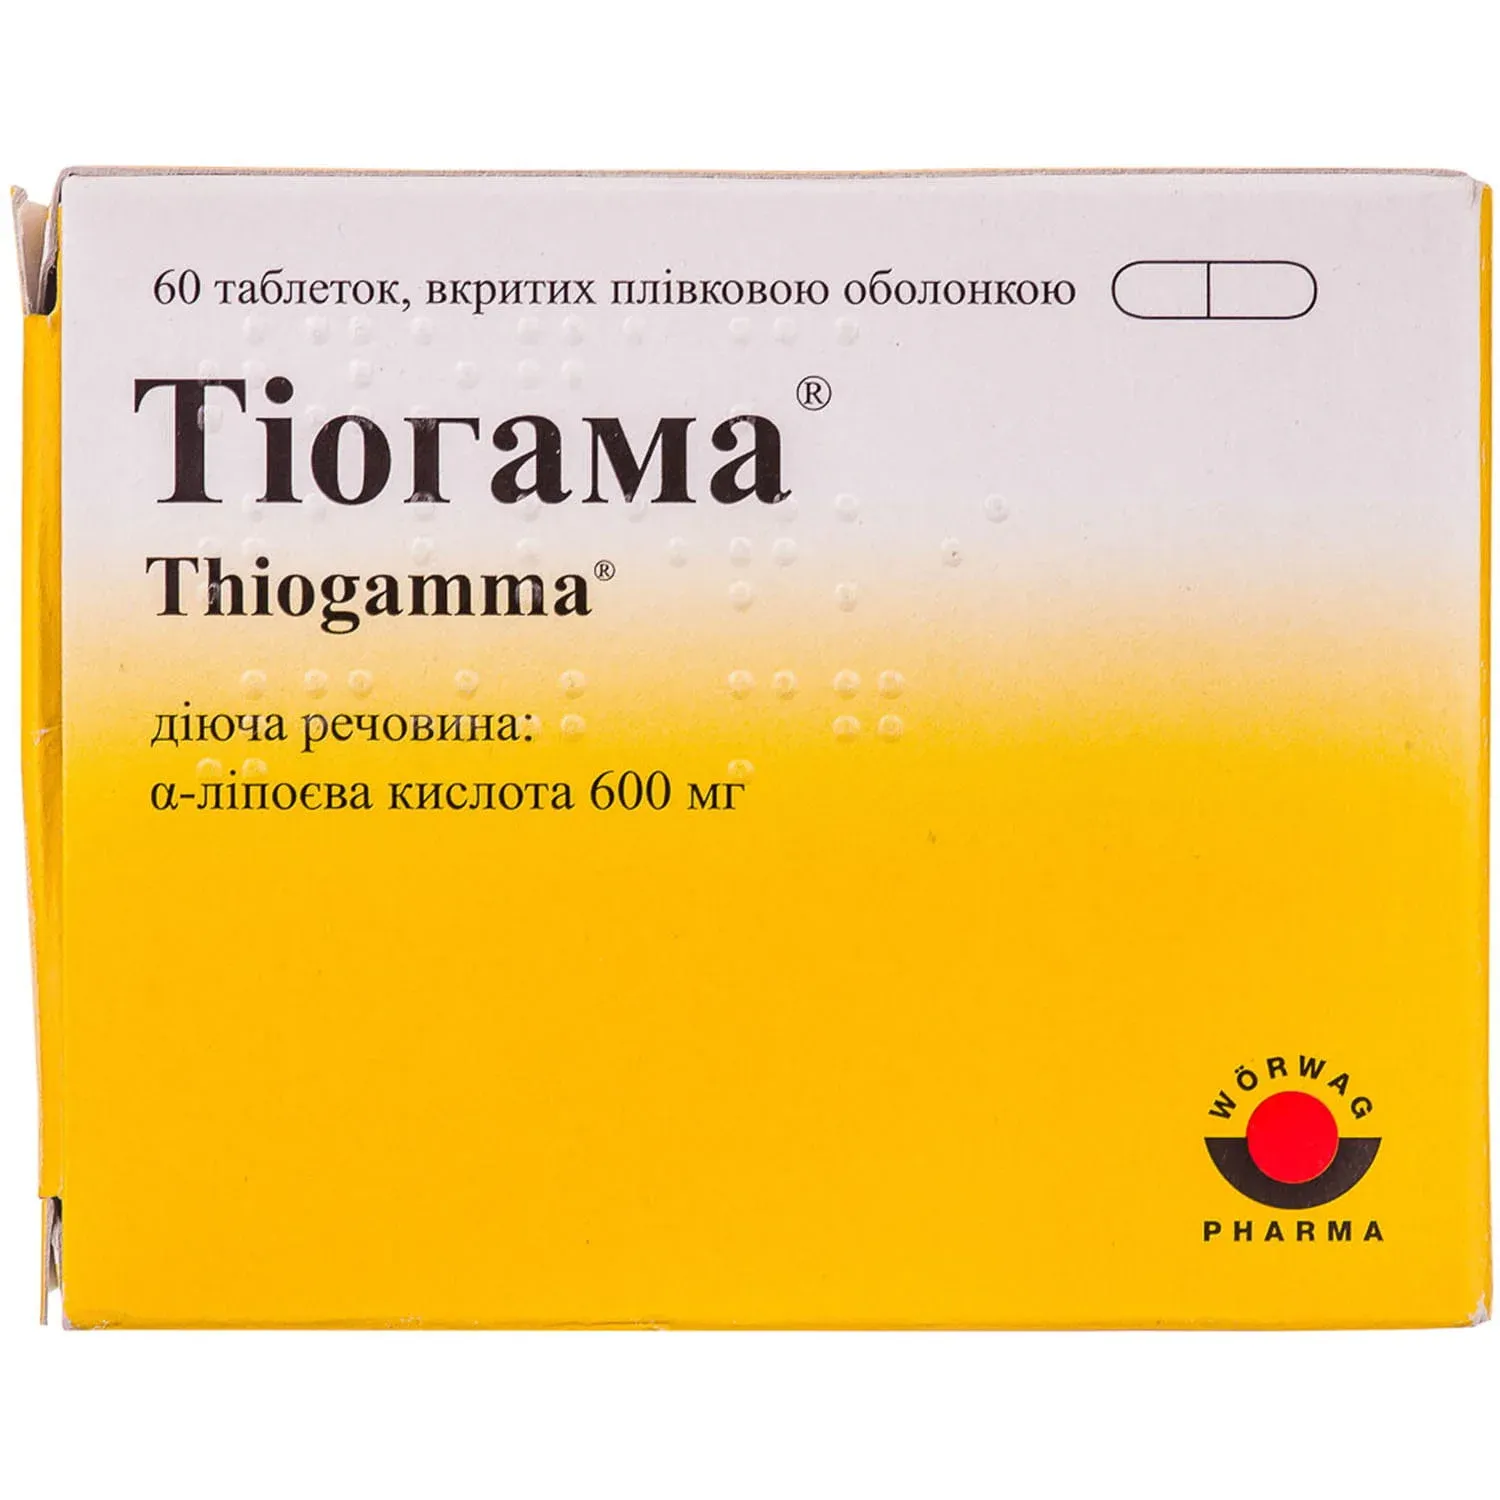 Купить тиогамма 600 в таблетках. Тиогамма турбо. Тиогамма 50мл в Украине. Тиогамма турбо Set 1,2% 50мл №10 р-р д/инф (Альфа липоевая кислота).